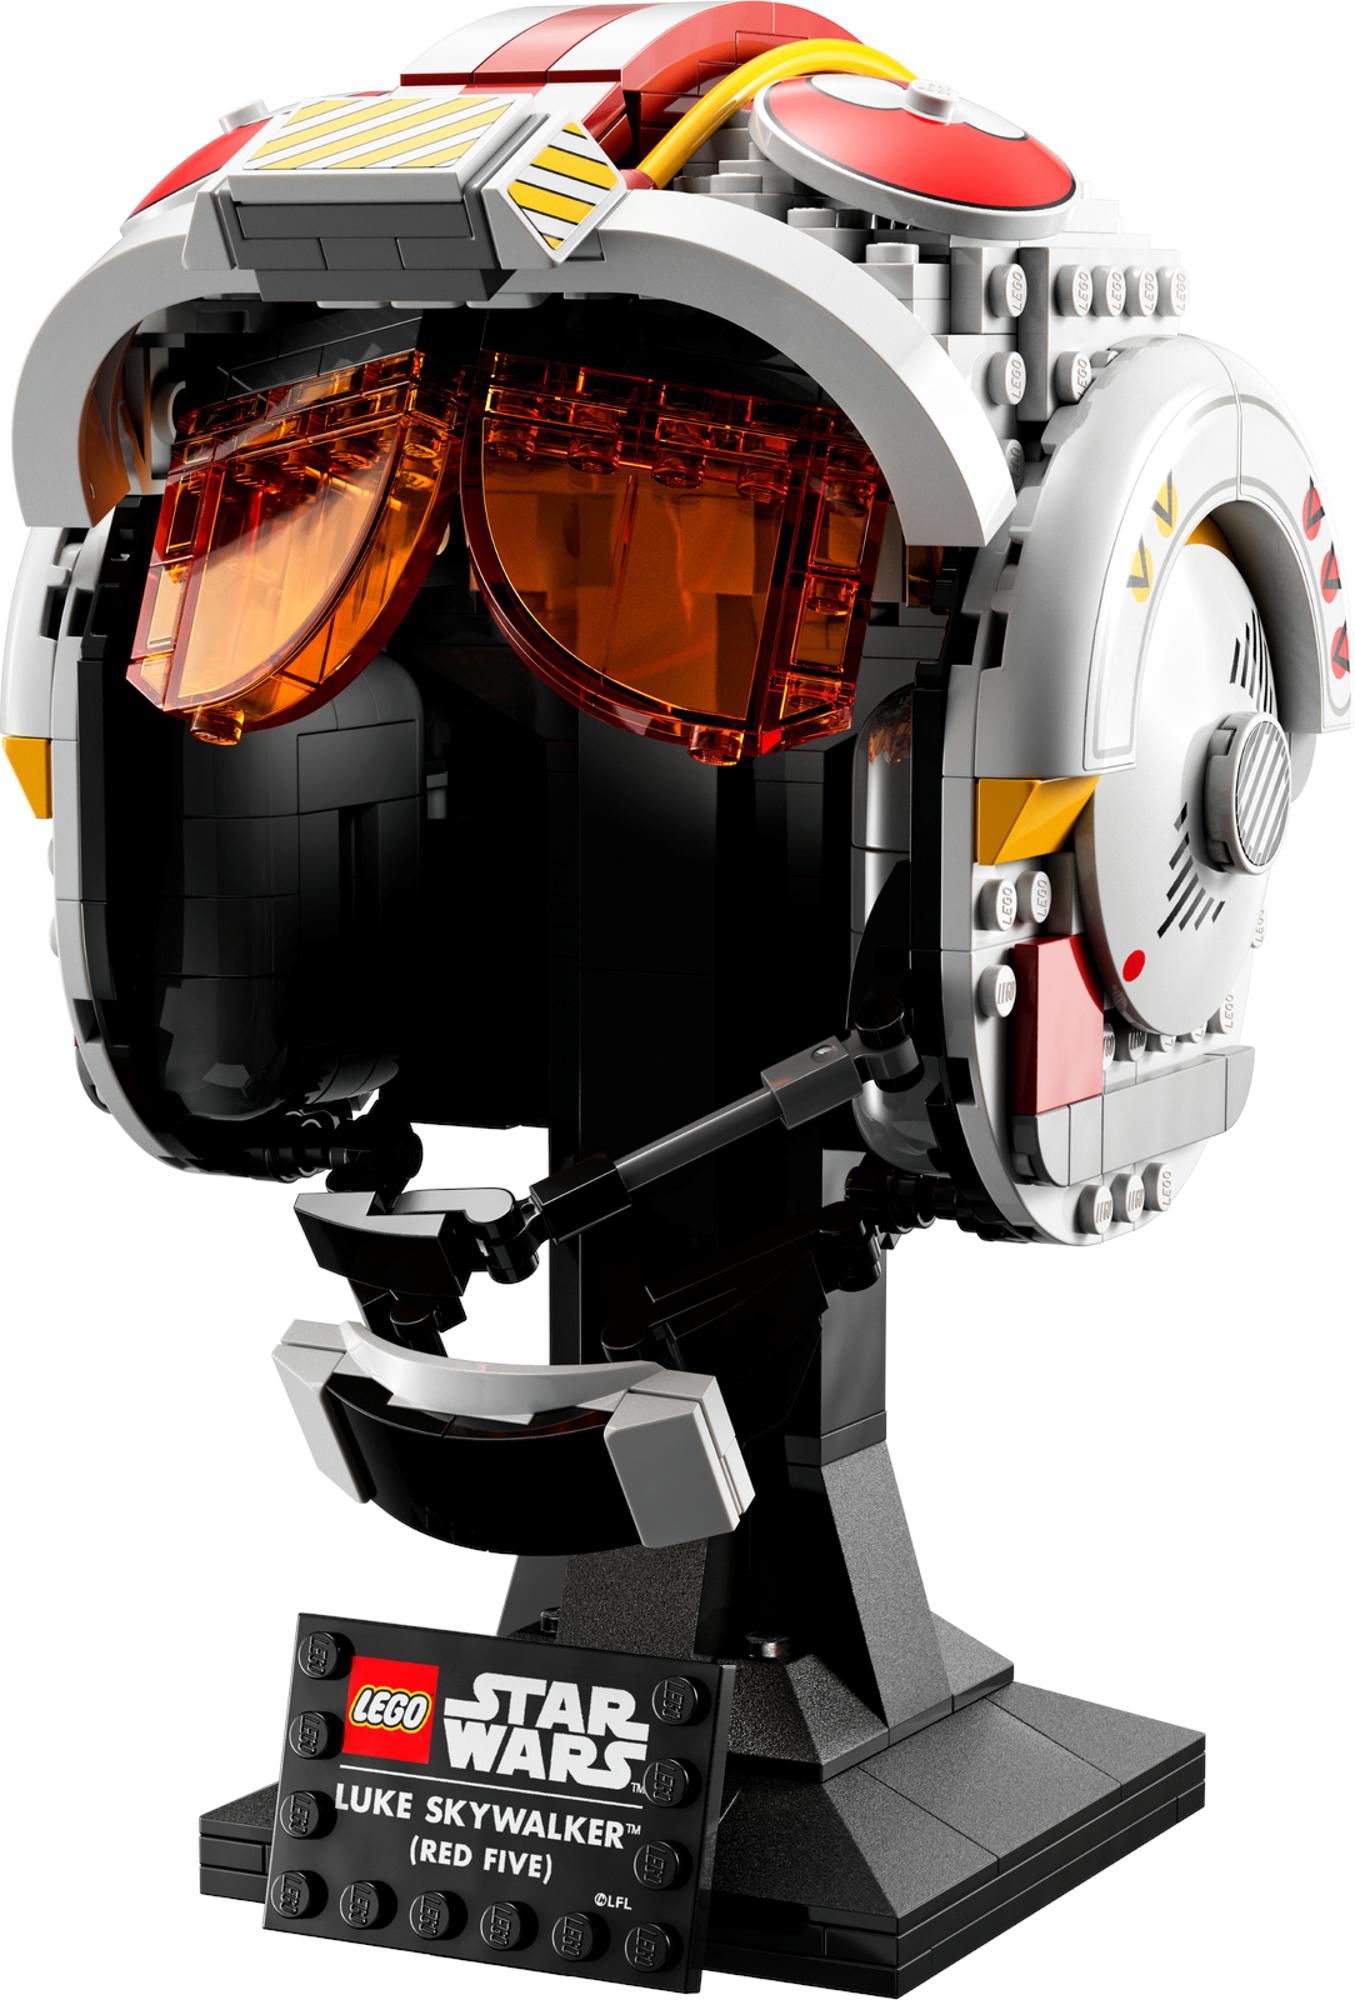 LEGO Star Wars - Luke Skywalker (Red Five) Helmet